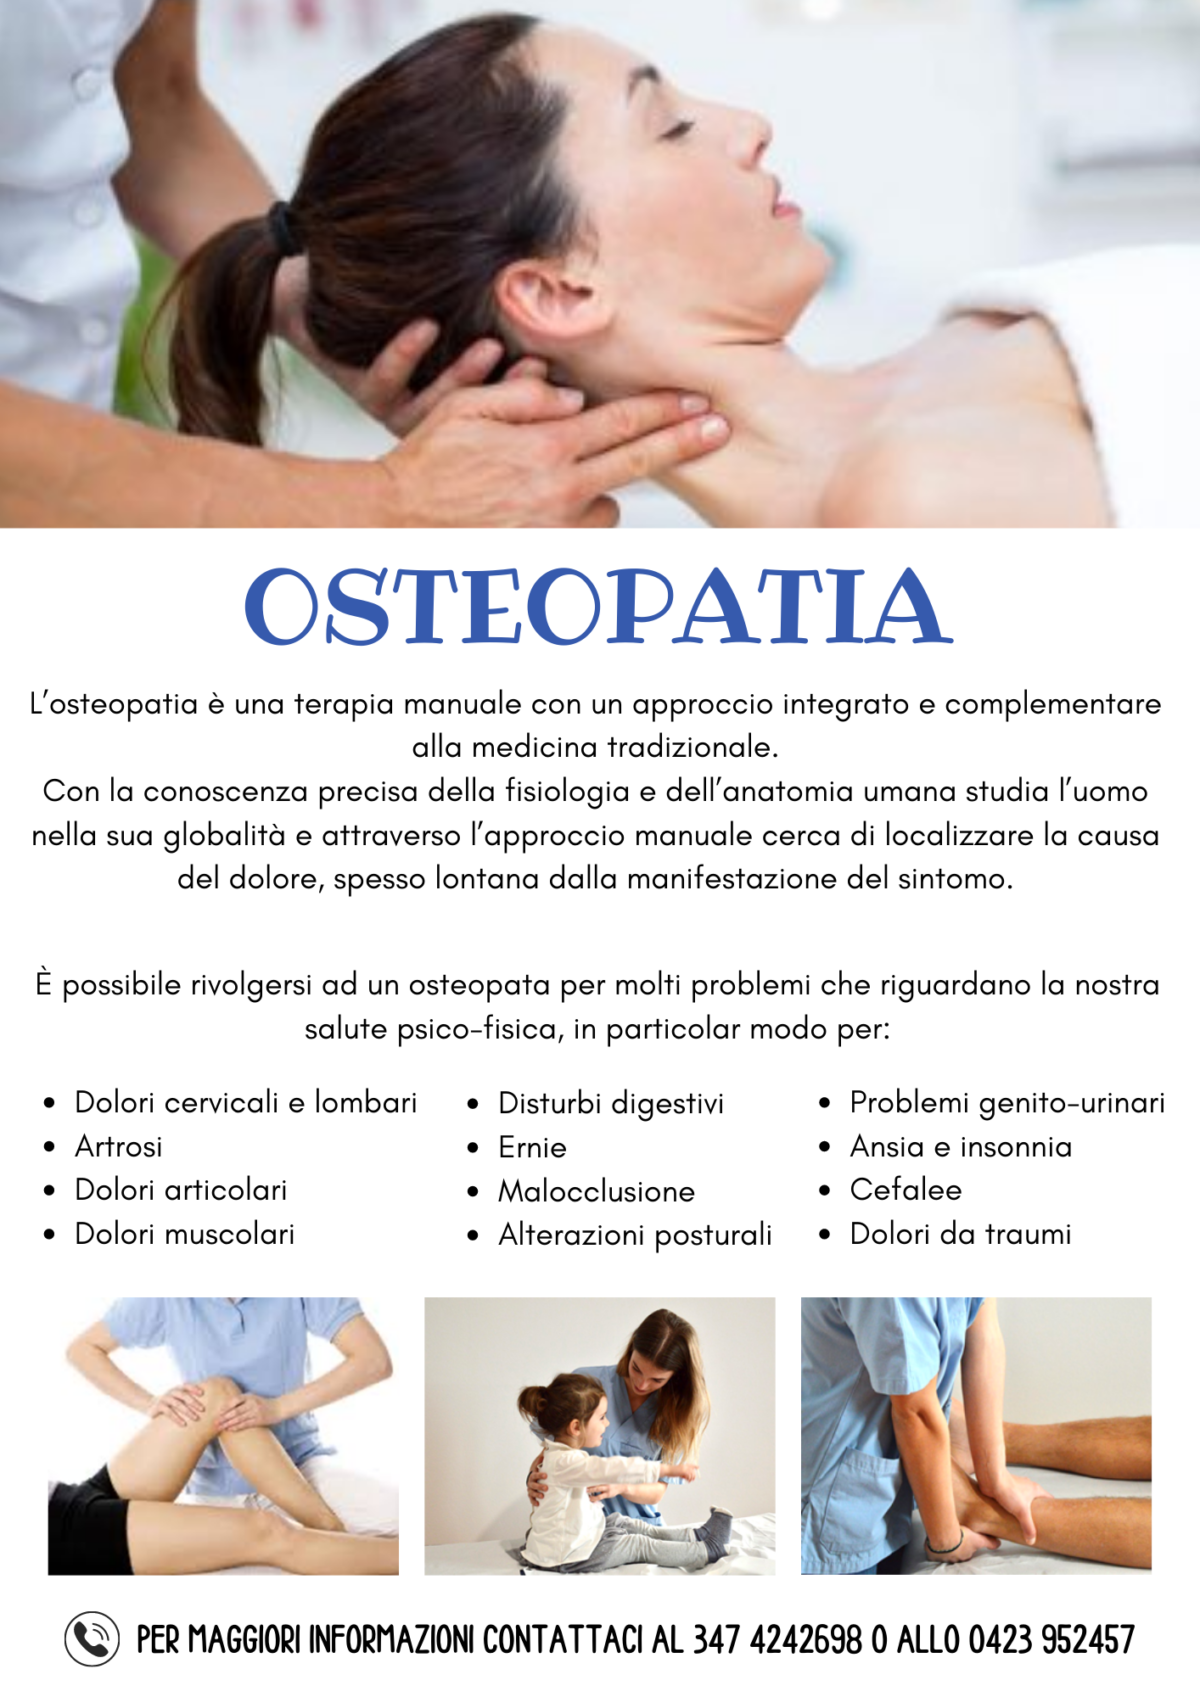 osteopatia-1200x1697.png